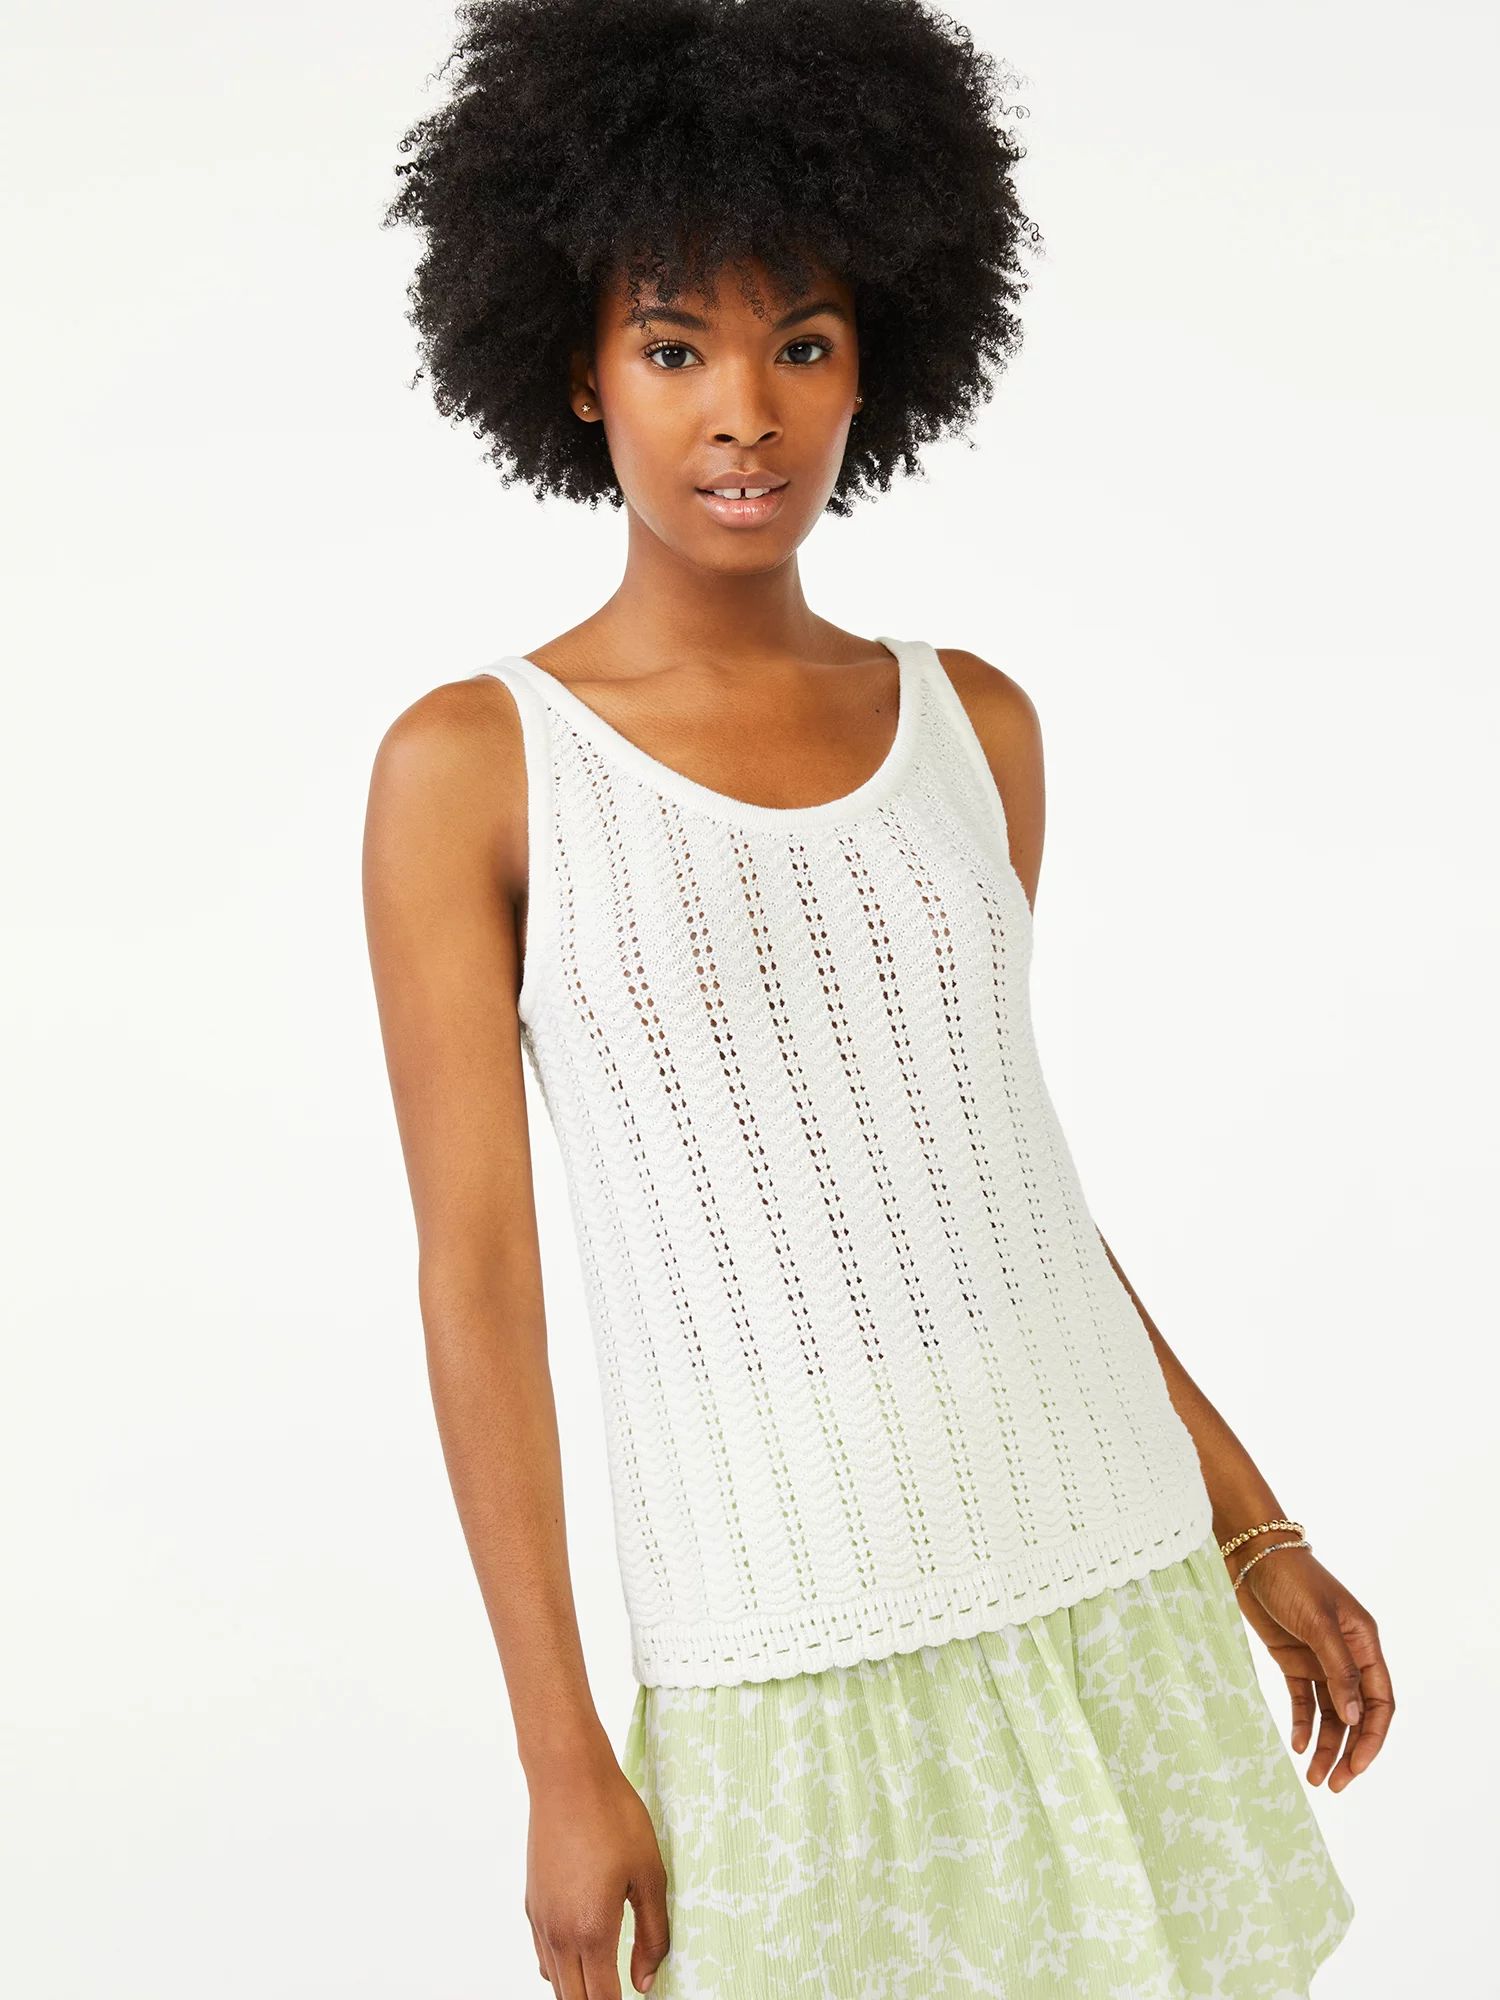 Scoop Women's Sweater Tank Top with Scallop Hem | Walmart (US)